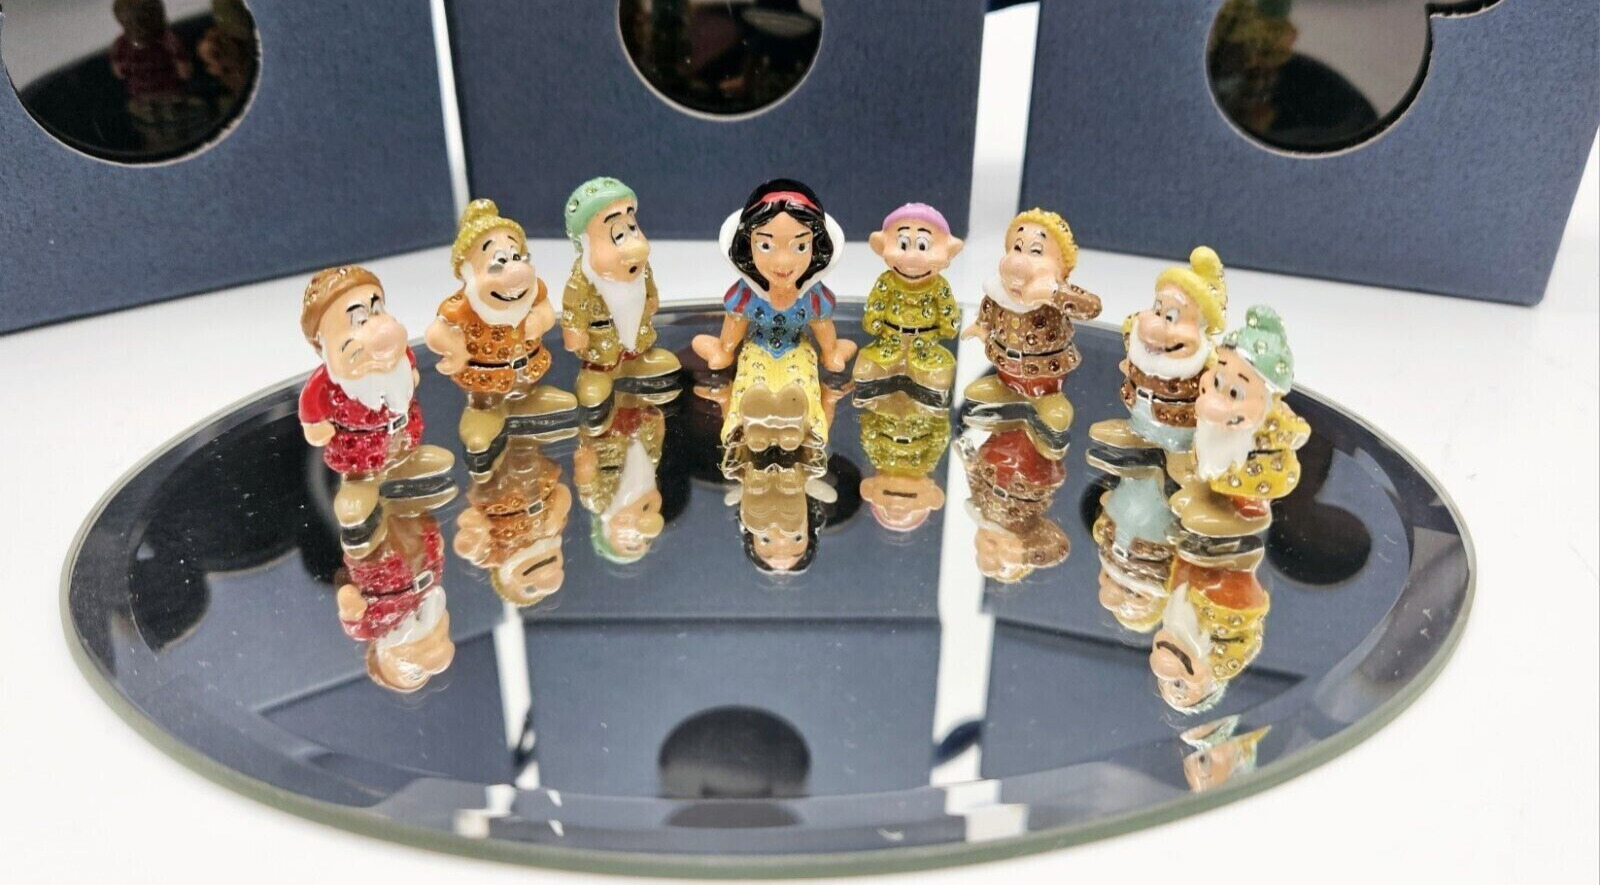 New Disney Arribas Brothers Swarovski Snow White & Seven Dwarfs Mini Figures Set